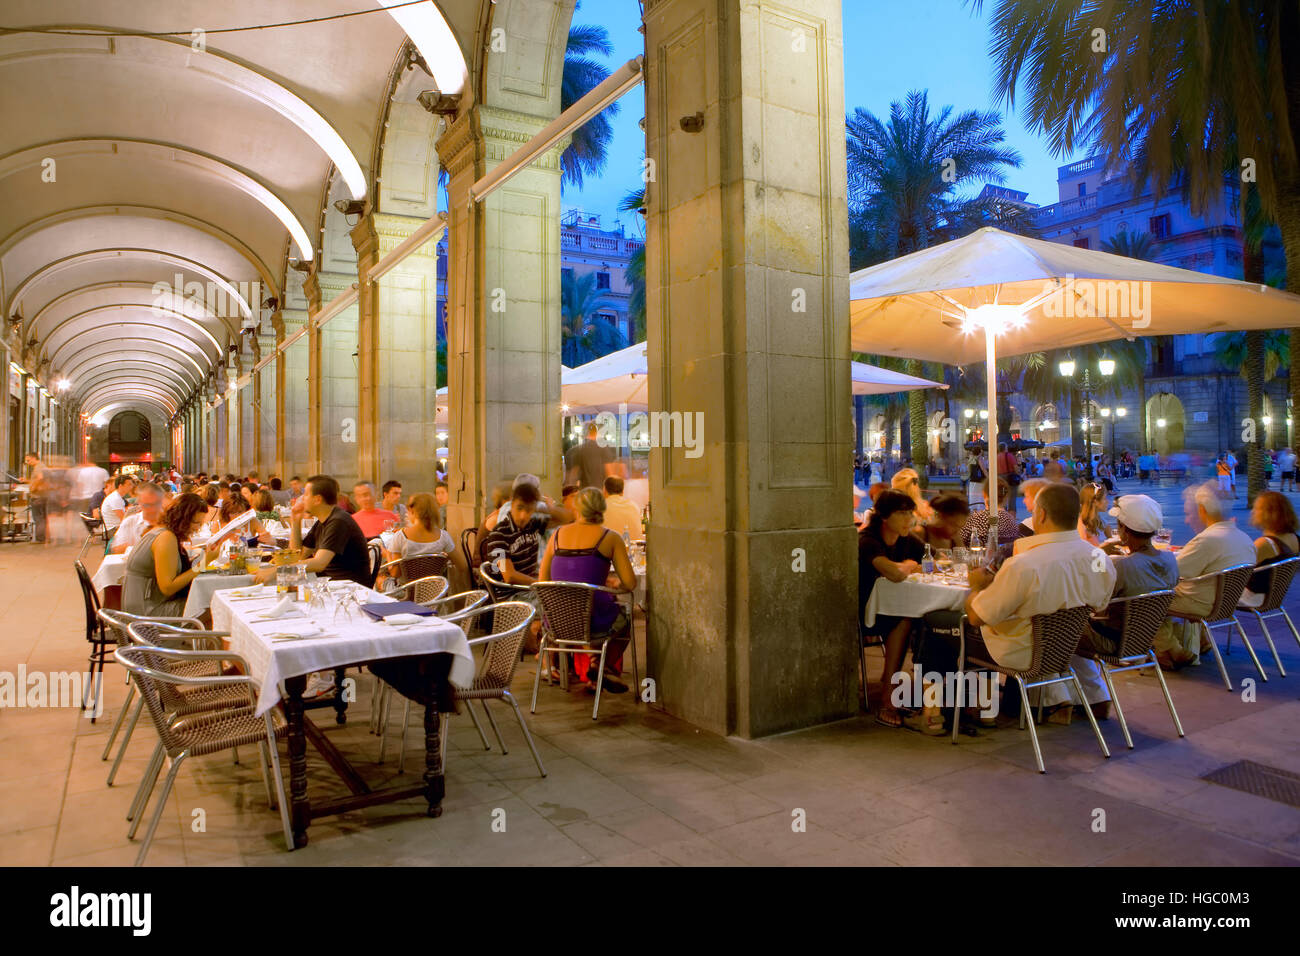 Plaza Real di notte, Barcellona Foto Stock